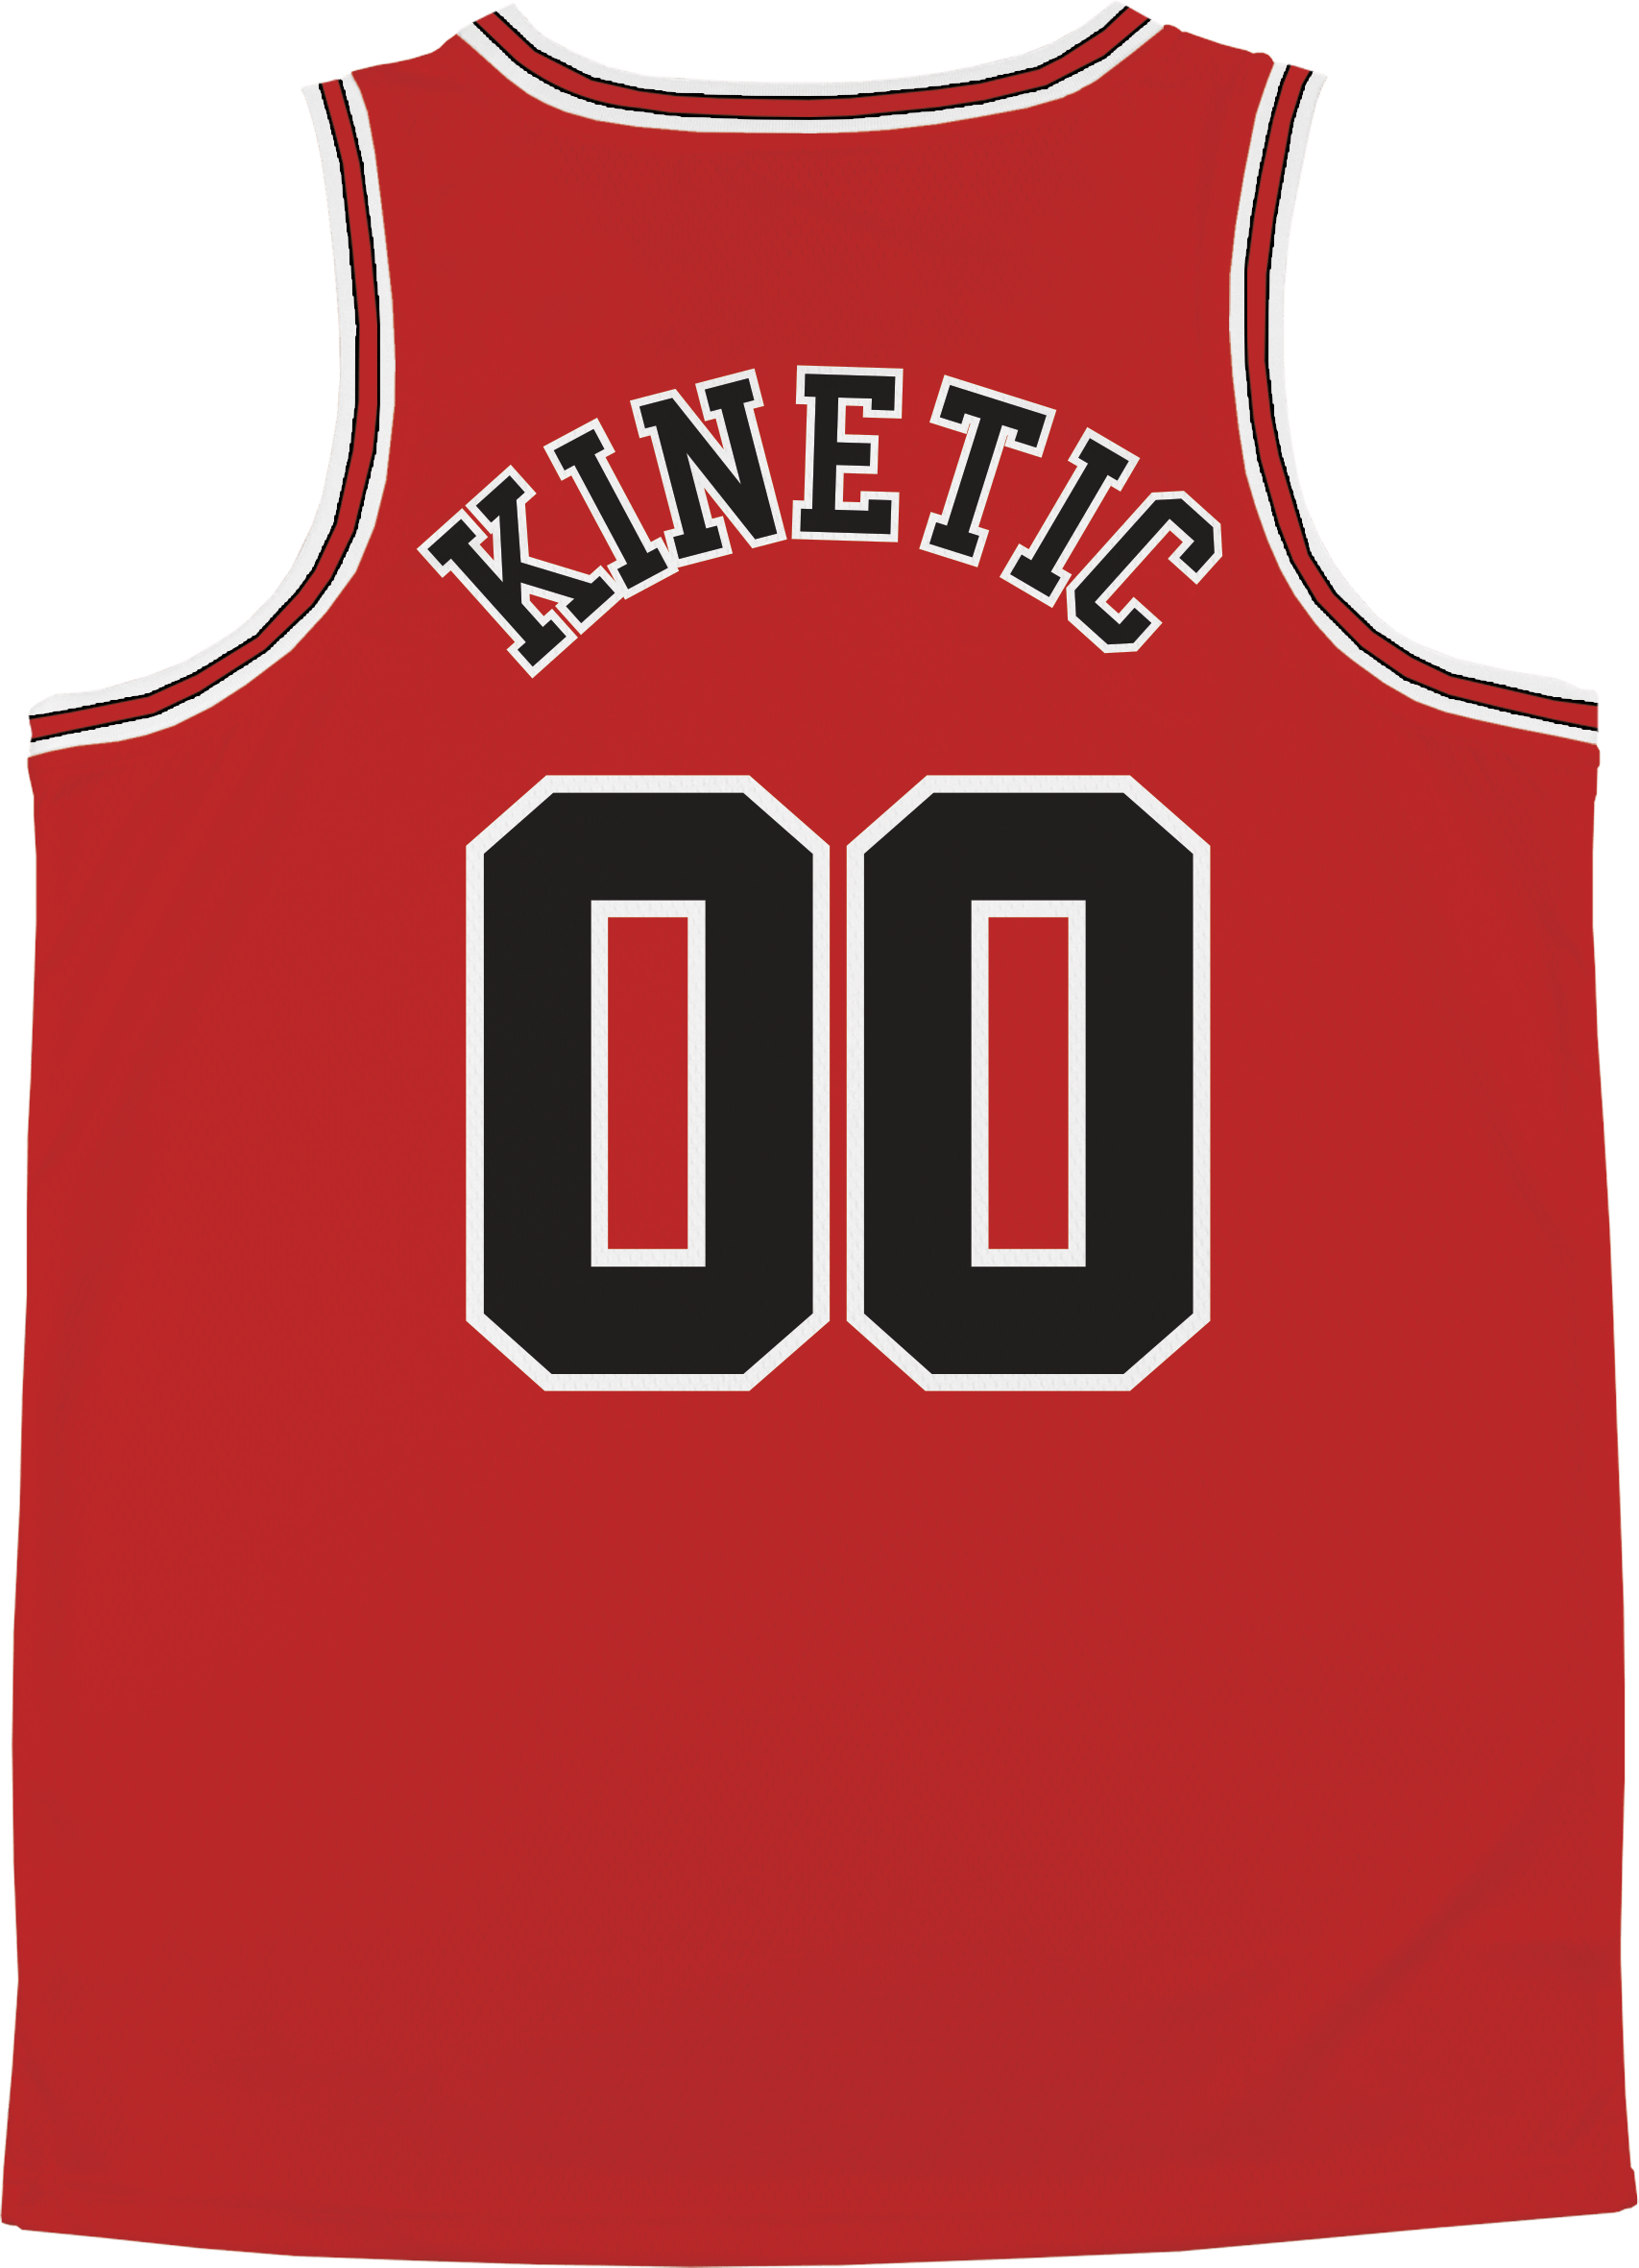 Phi Kappa Sigma - Big Red Basketball Jersey - Kinetic Society